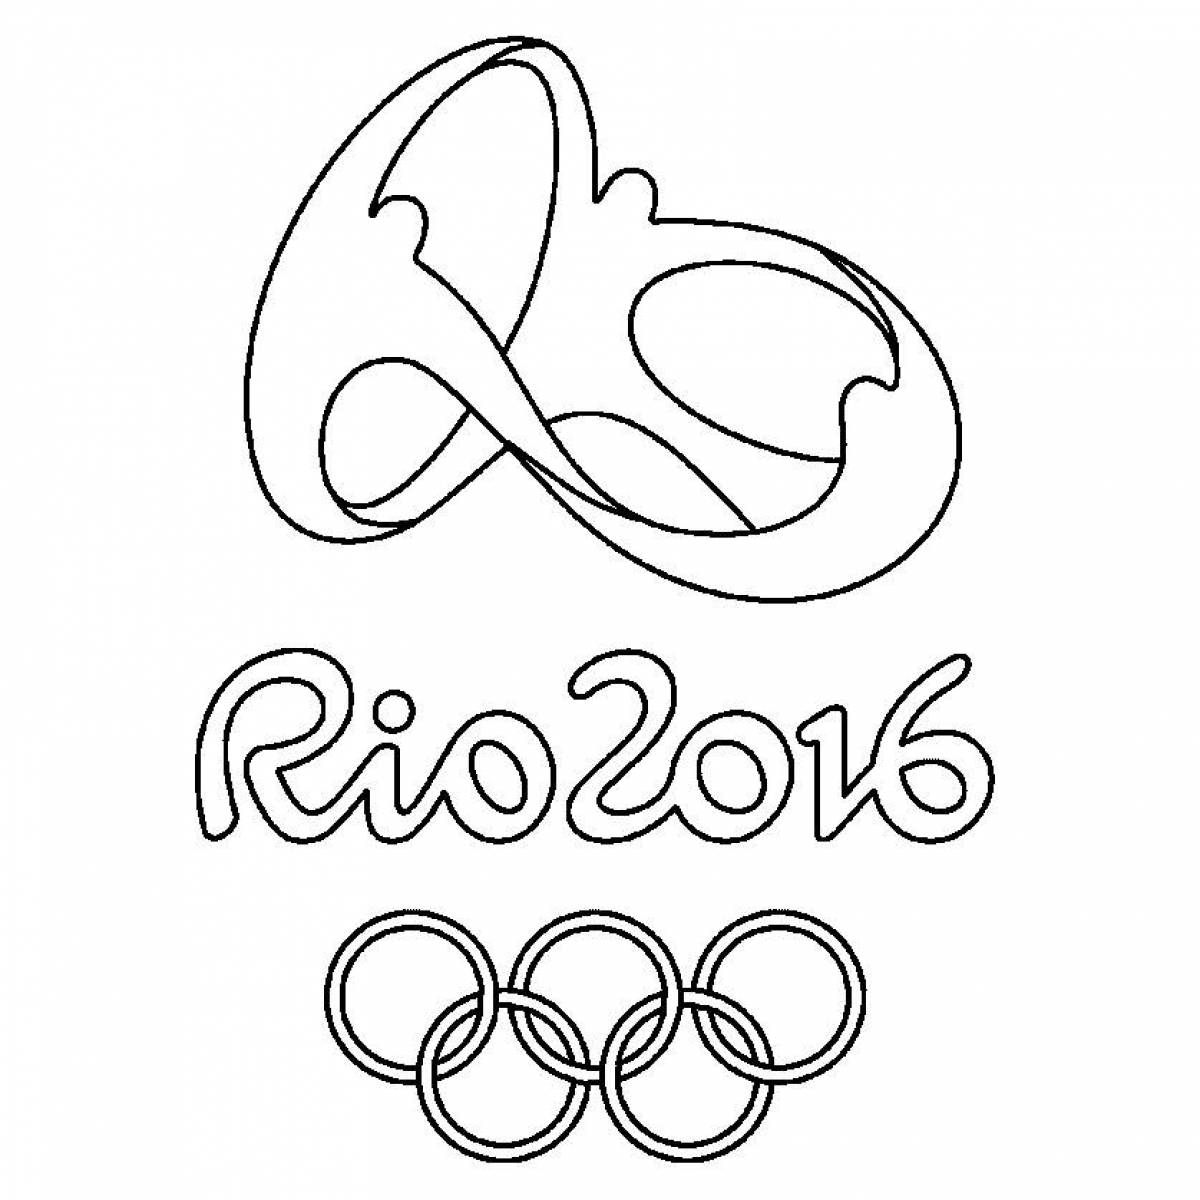 Logotype rio 2016